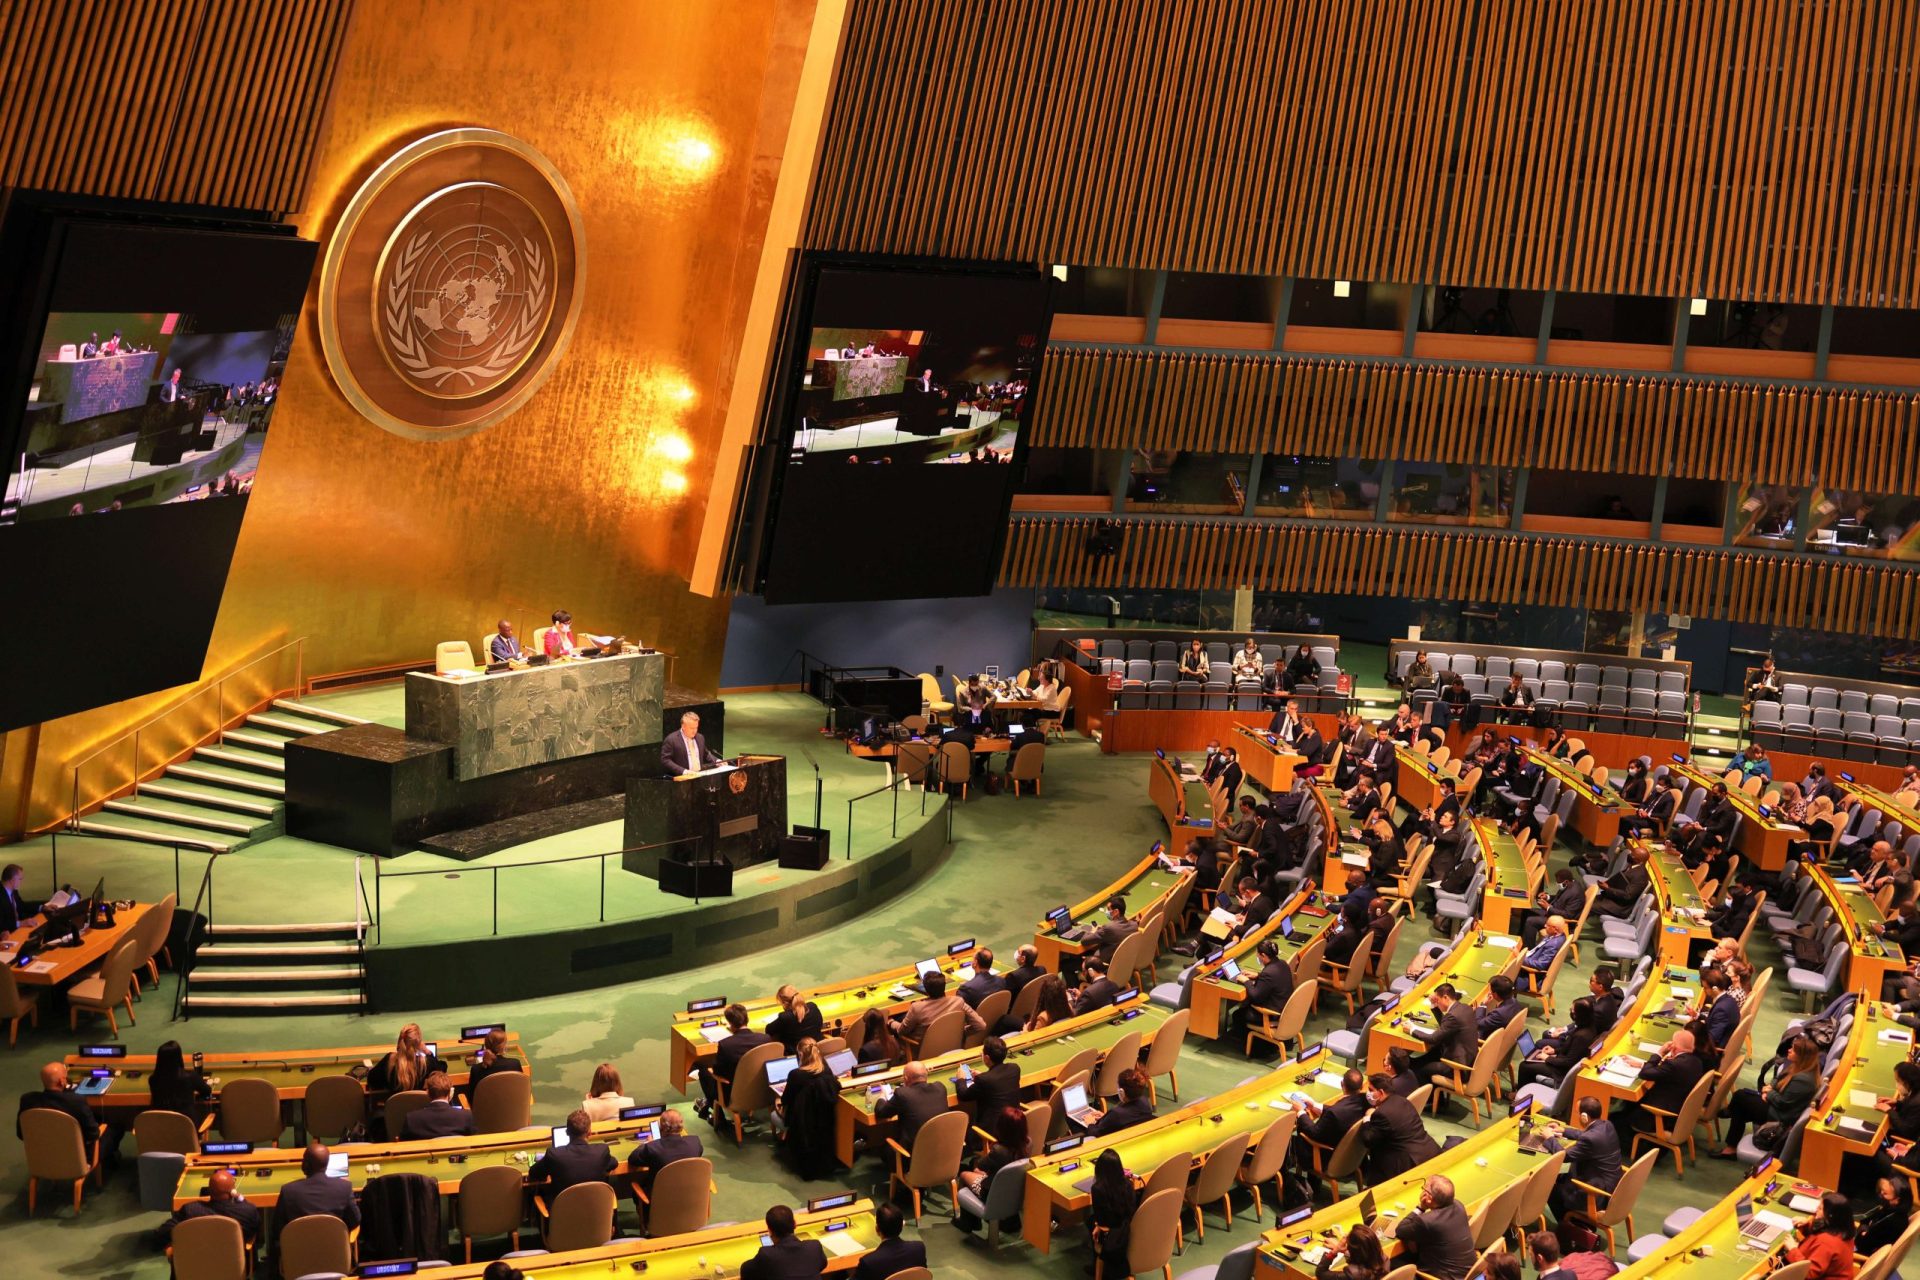 Rússia suspensa do Conselho de Direitos Humanos da ONU